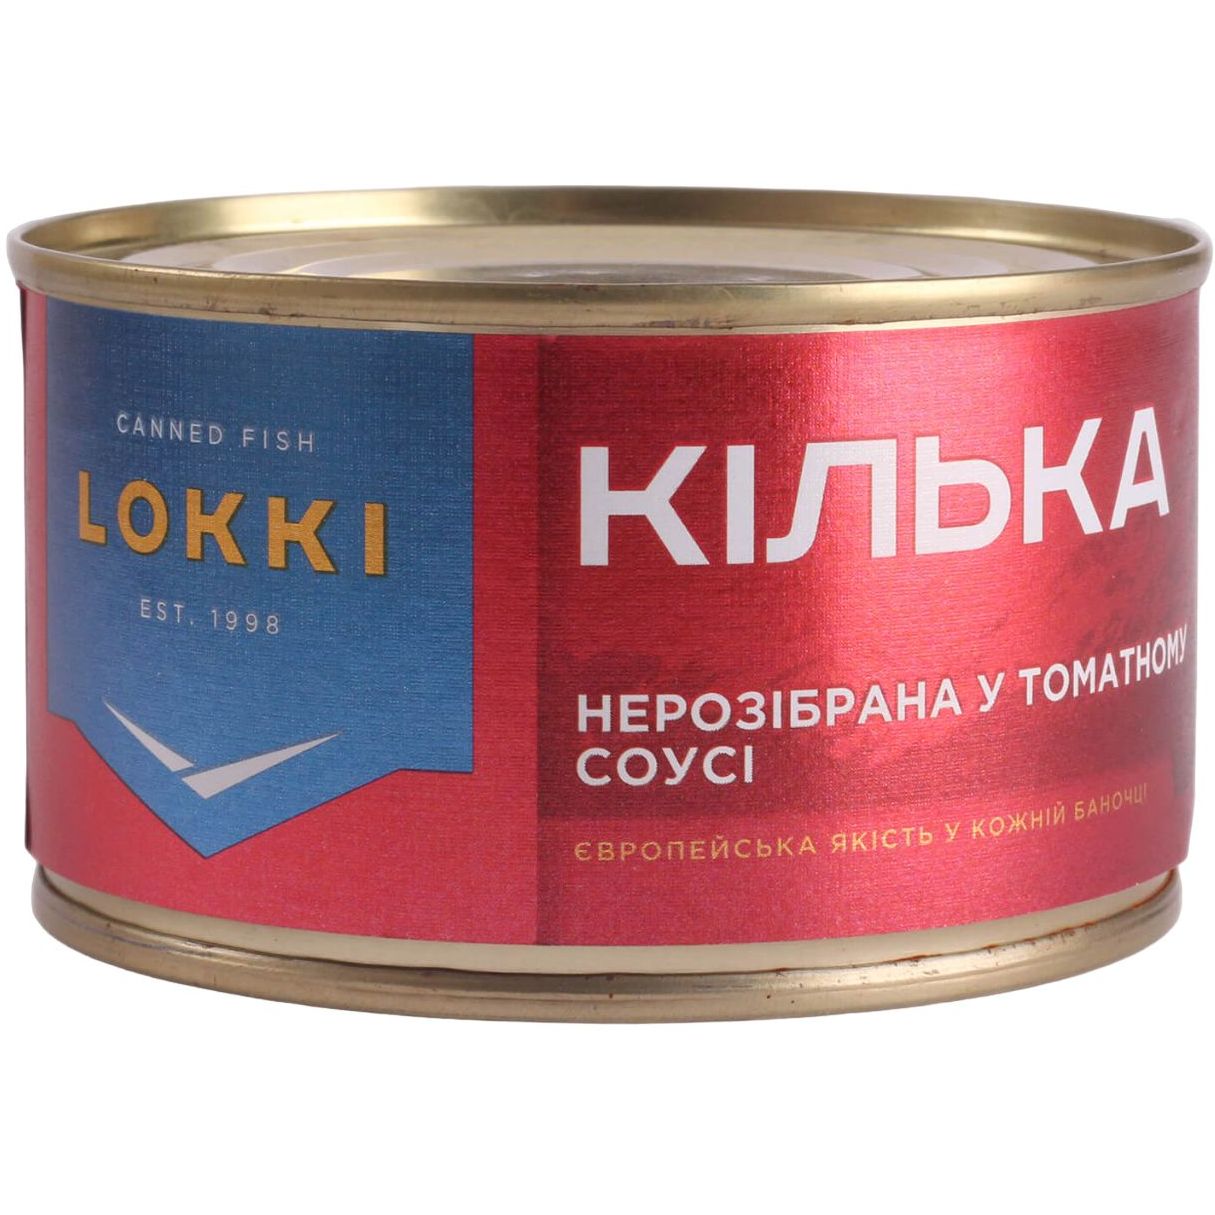 Килька Lokki неразобранная в томатном соусе 220 г (905921) - фото 1